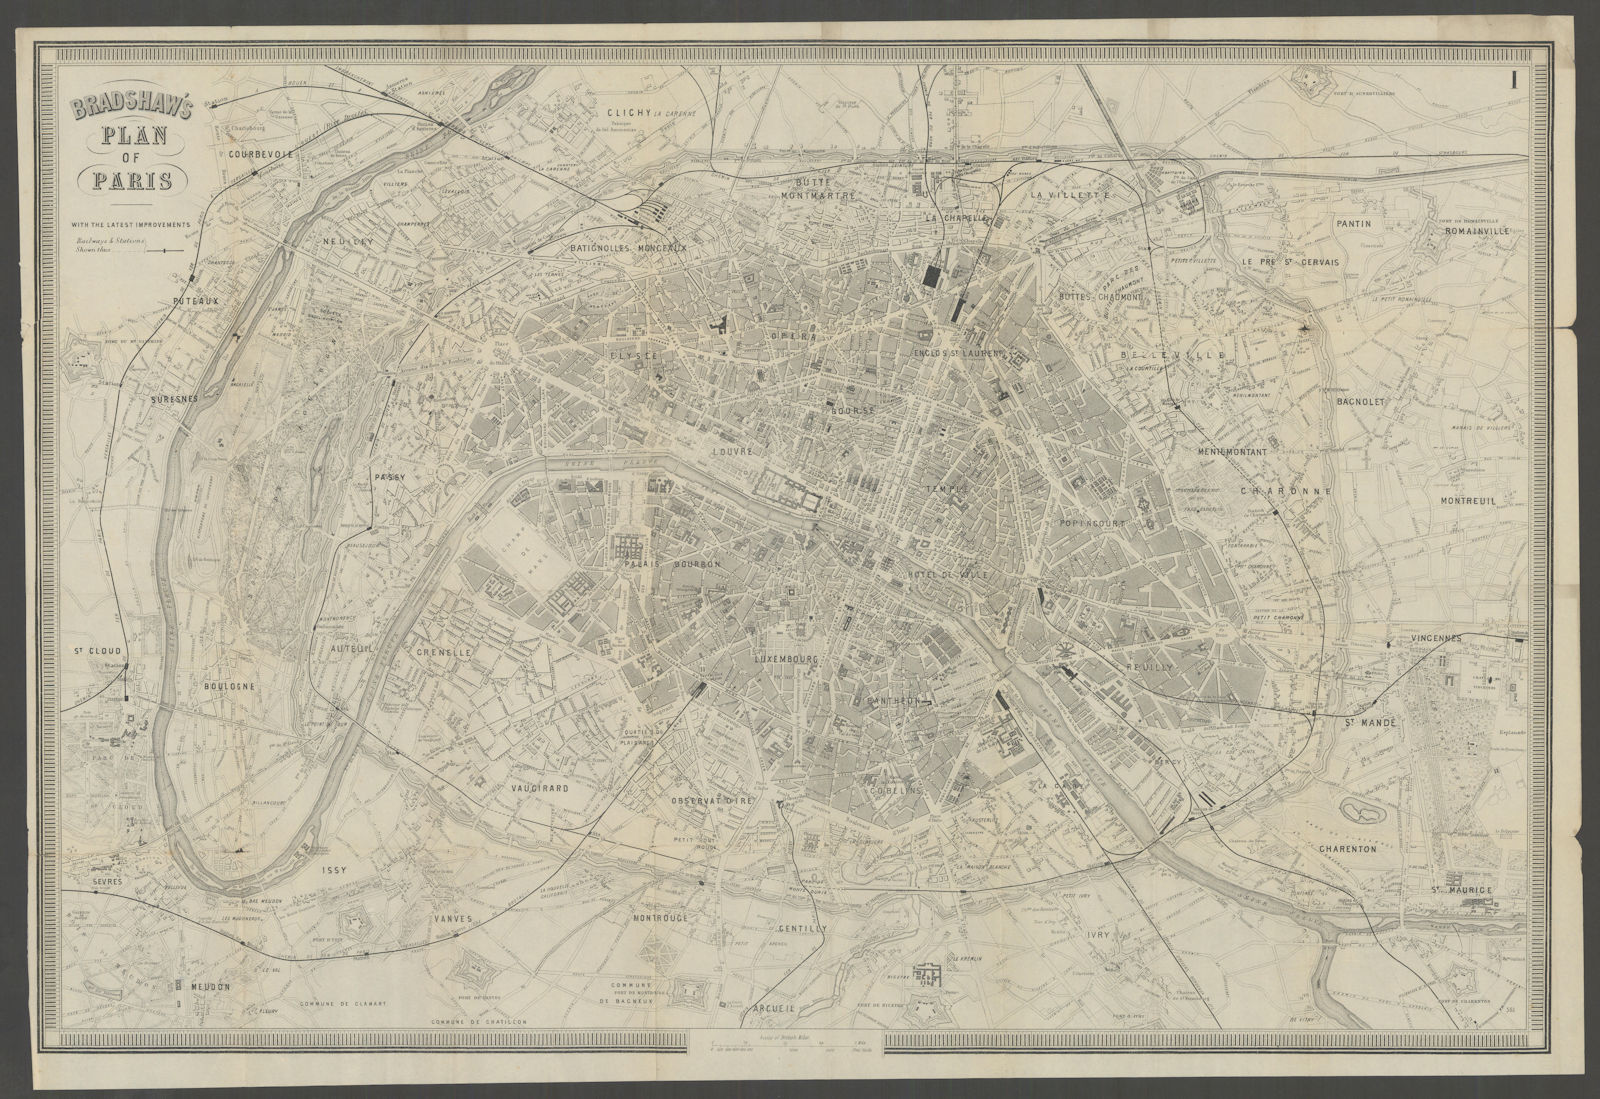 PARIS. Paris. Town city plan 1882 old antique vintage map chart